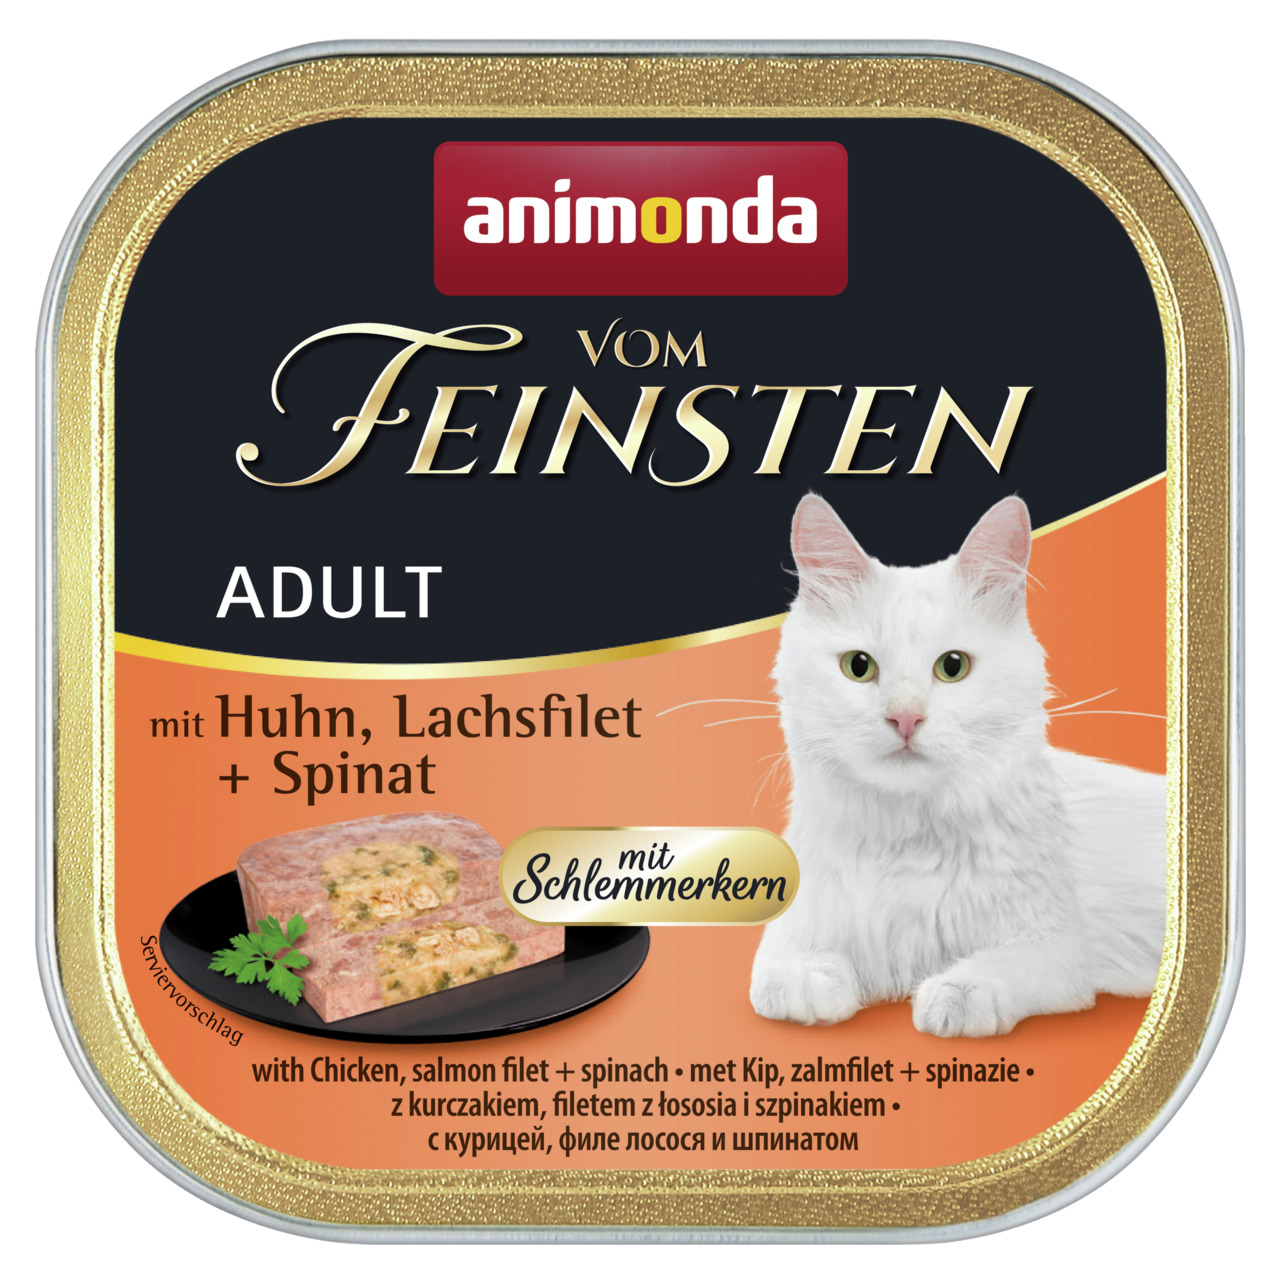 Animonda vom Feinsten Adult  mit Huhn, Lachsfilet + Spinat mit Schlemmerkern Katzen Nassfutter 100 g